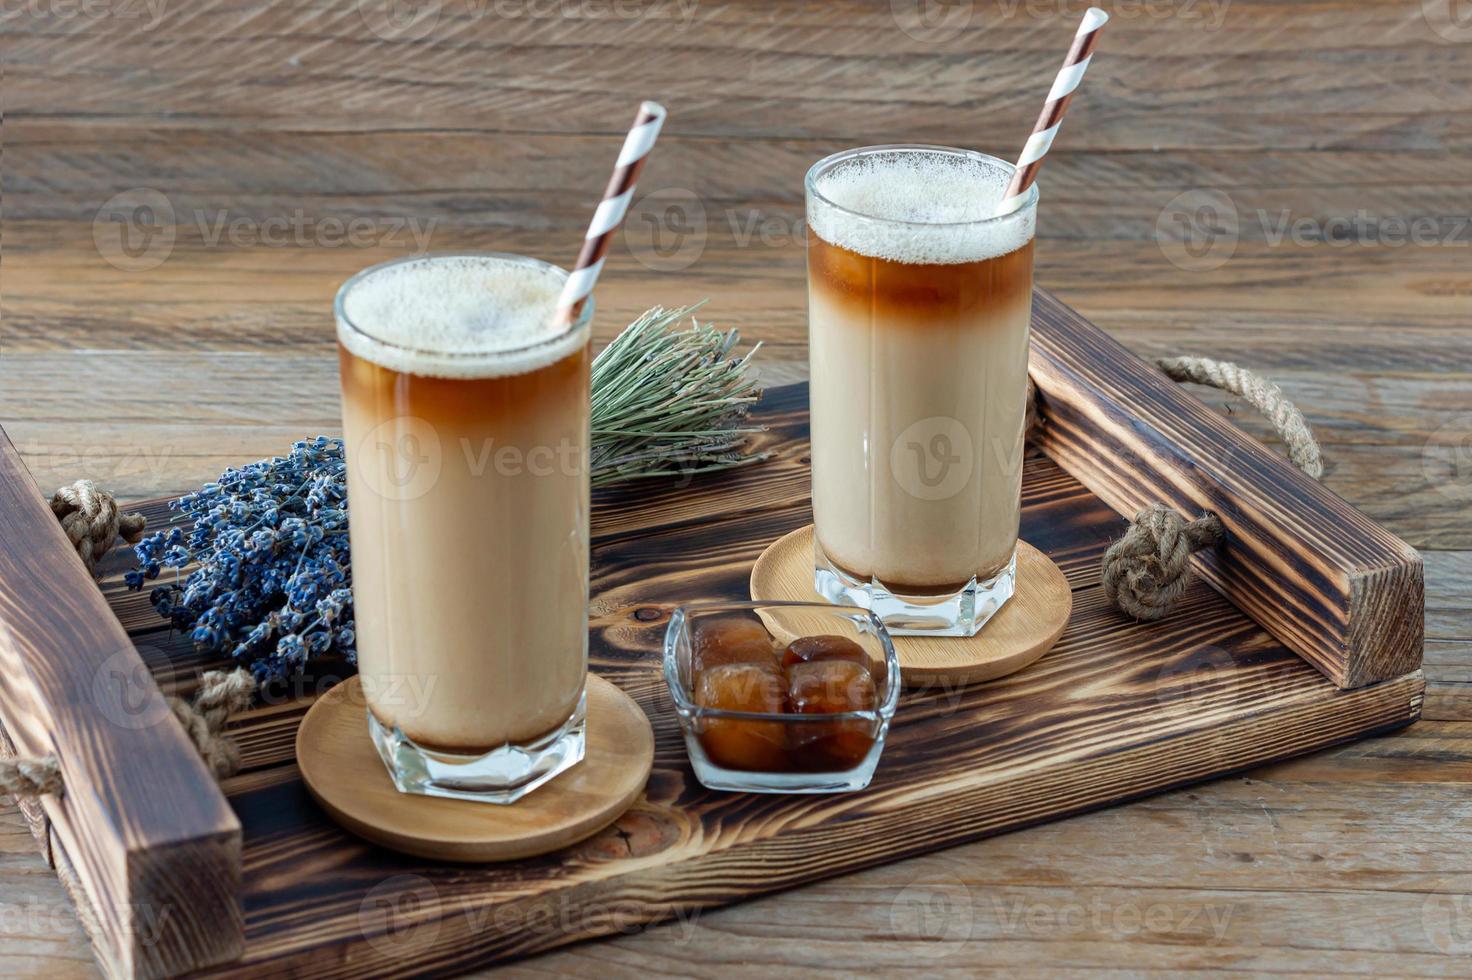 café com leite ou cappuccino com espuma de leite e lavanda em um copo alto na bandeja de madeira foto